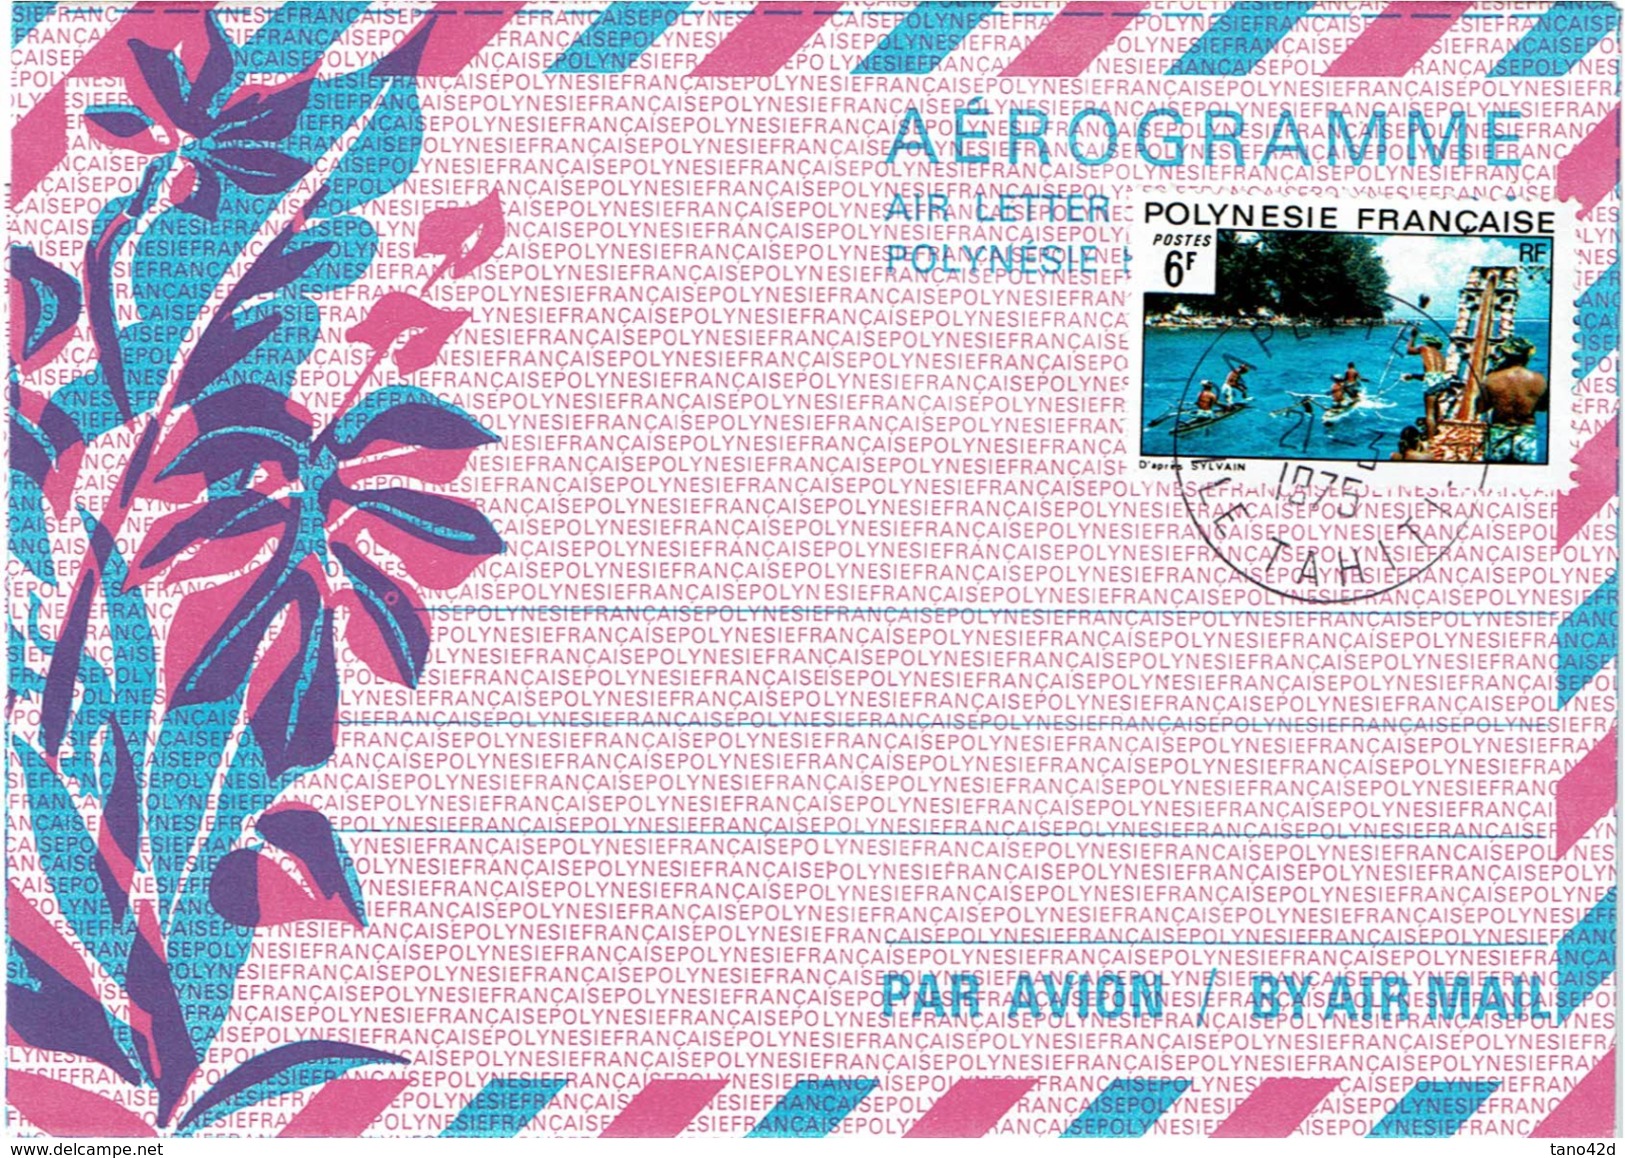 REF BR39 - POLYNESIE FRANCAISE - AEROGRAMME N°1 20F AVEC TPM 6F OBL. - Aerogramme